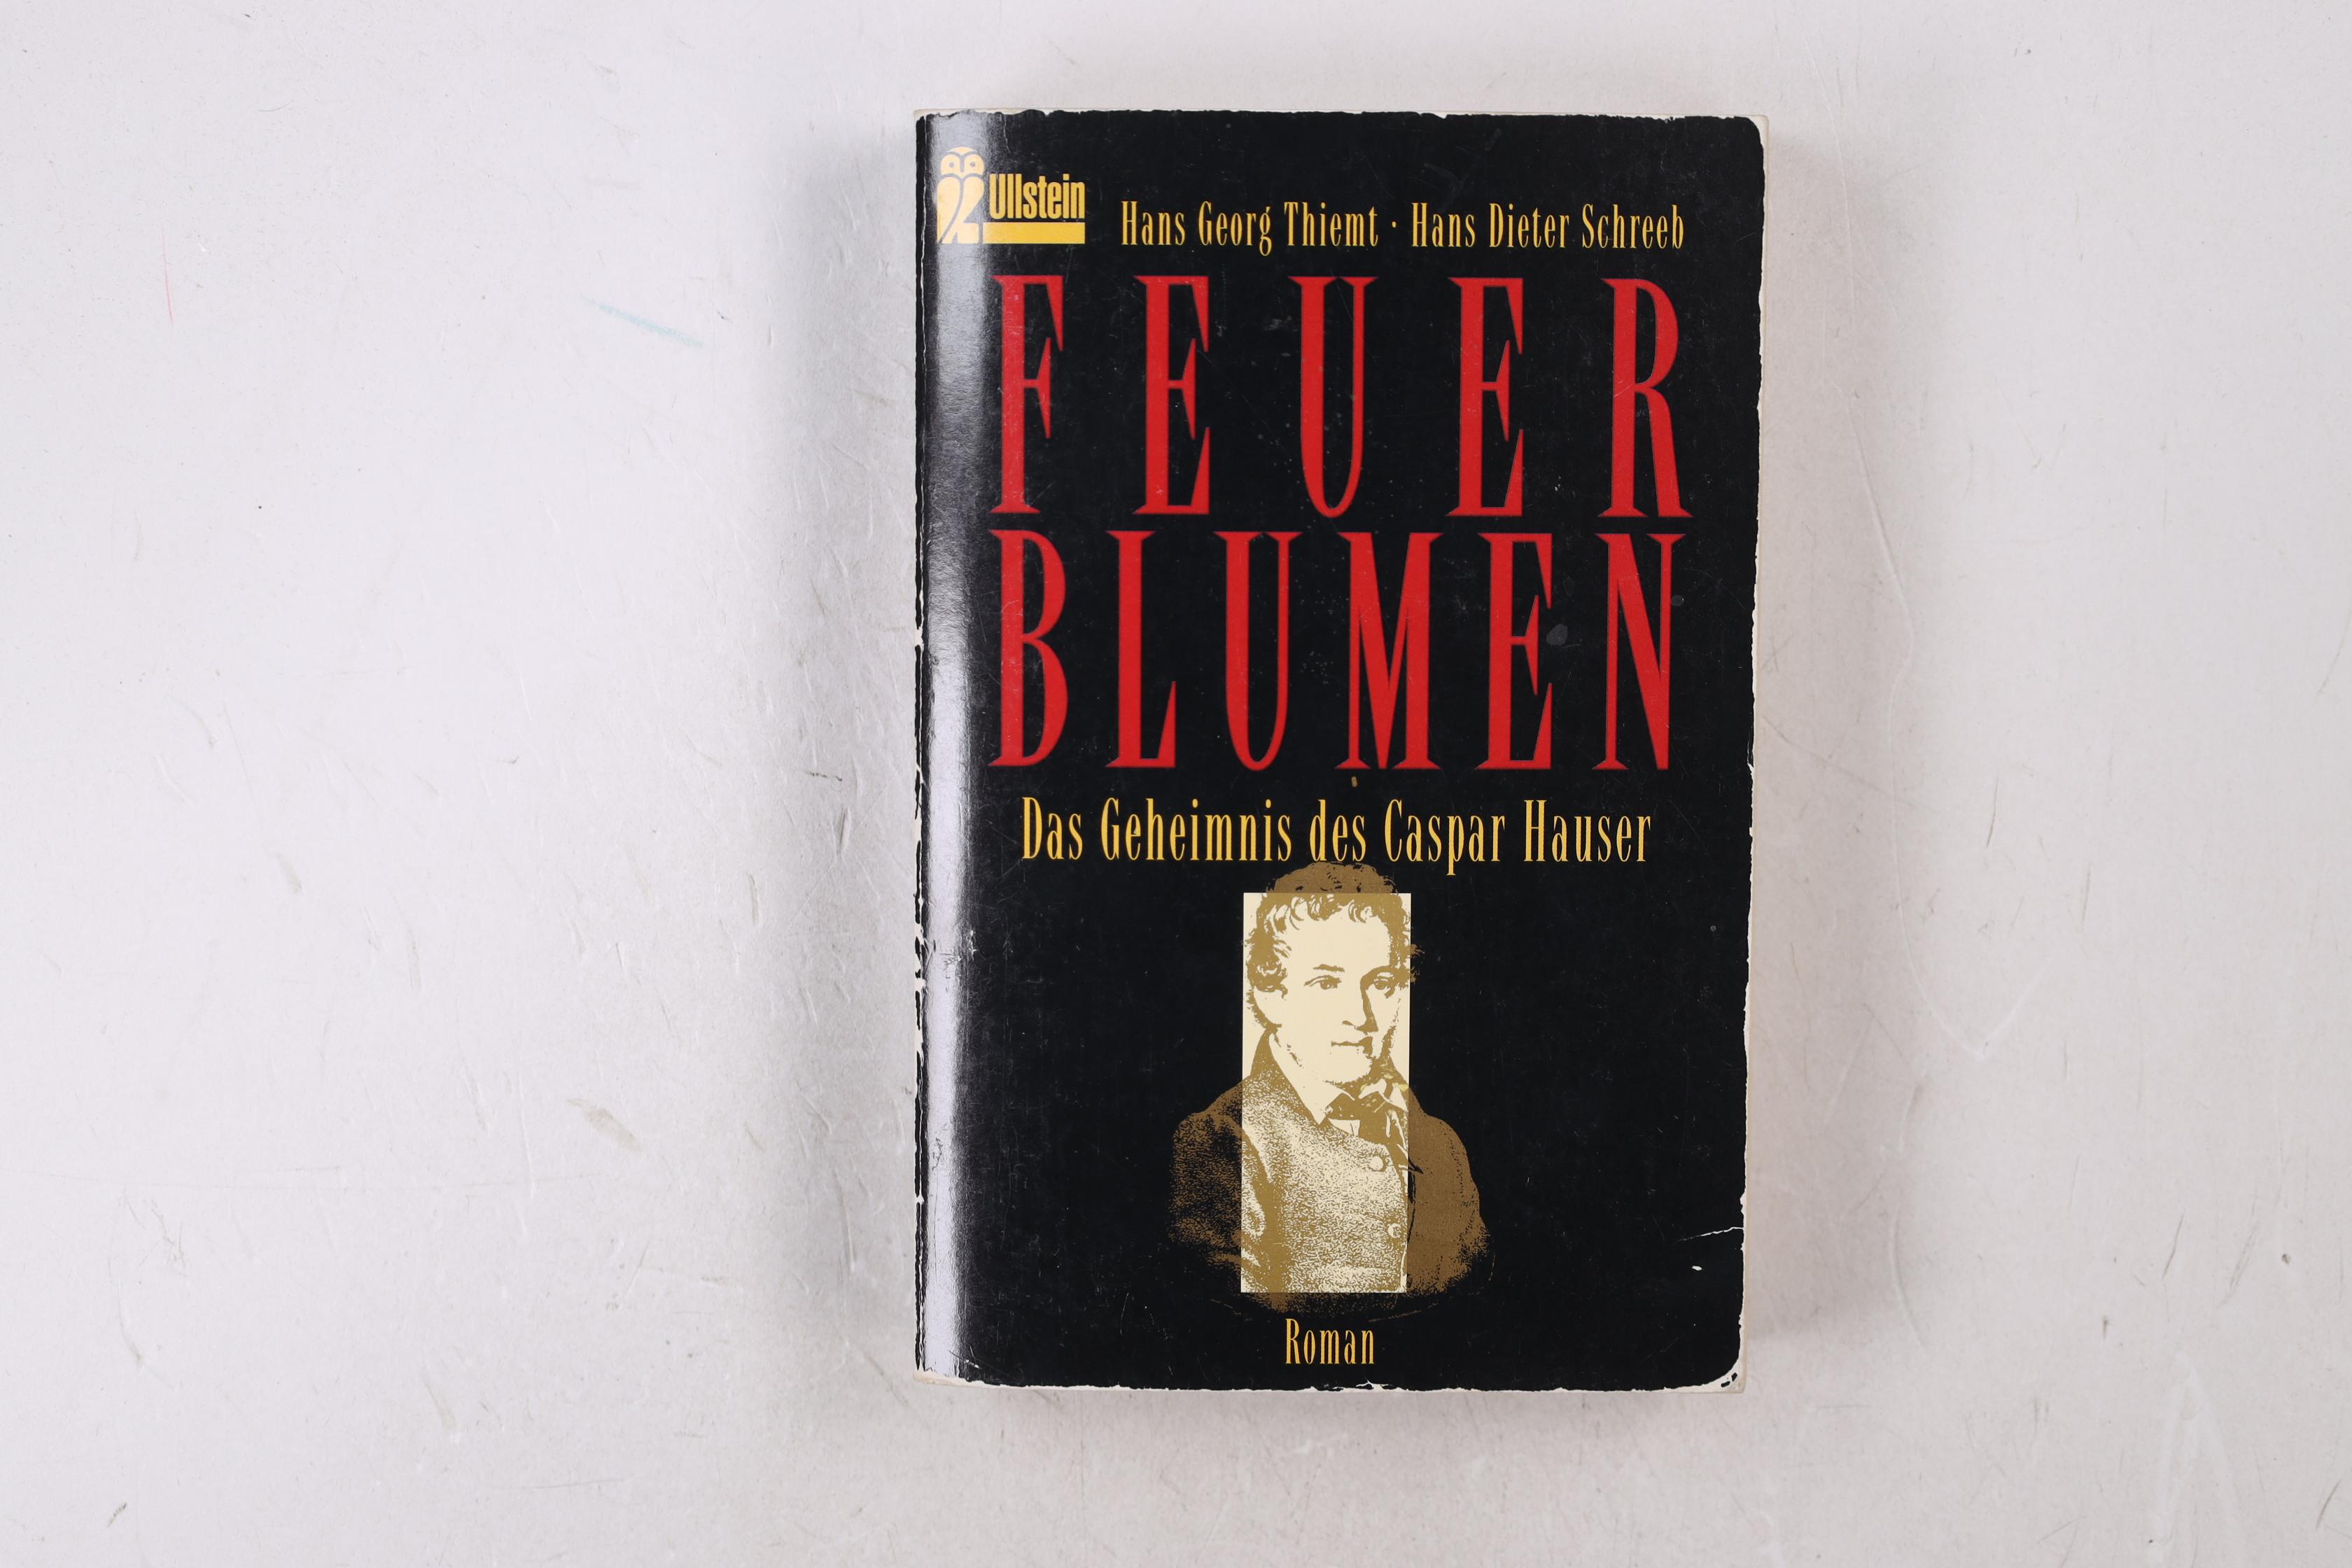 FEUERBLUMEN. das Geheimnis des Caspar Hauser ; Roman - Thiemt, Hans Georg; Schreeb, Hans Dieter; ;